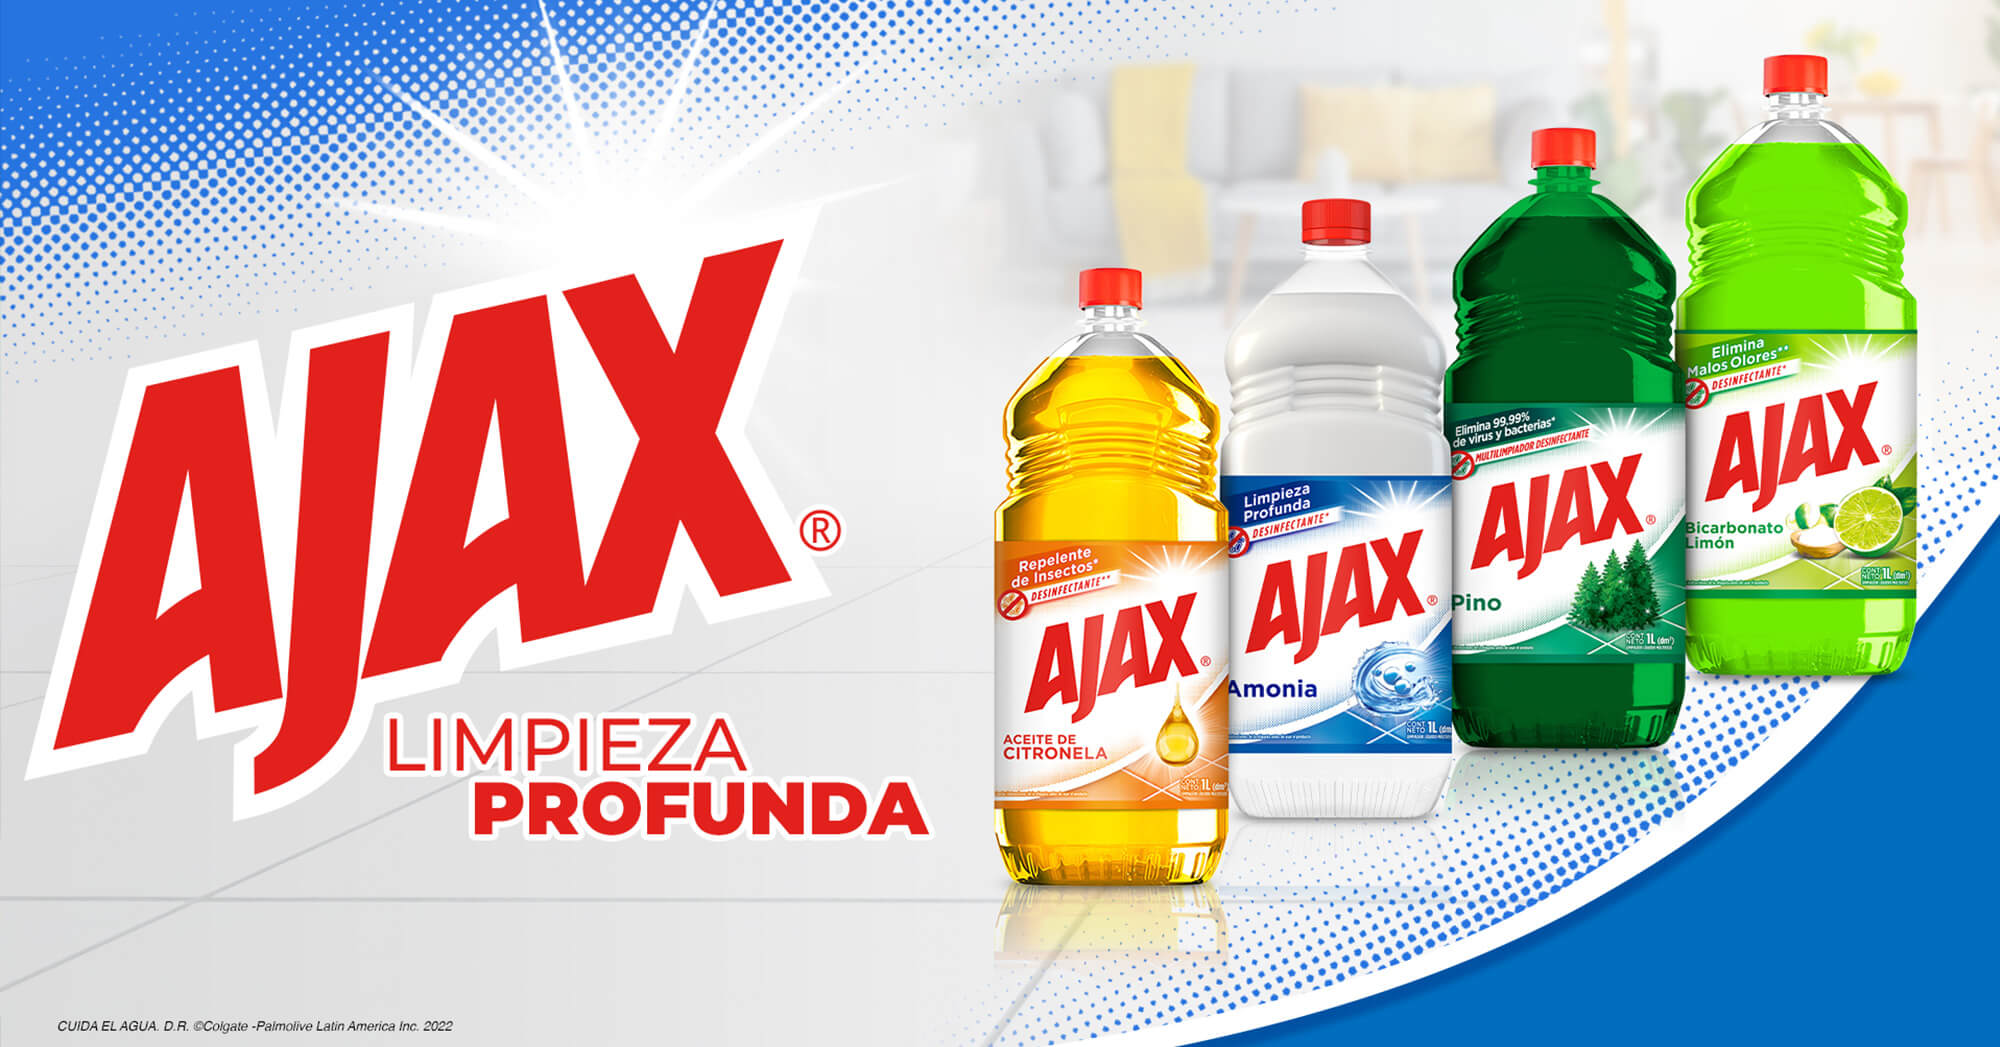 Ajax® Pino. Multilimpiador desinfectante. Elimina el 99.99% de bacterias